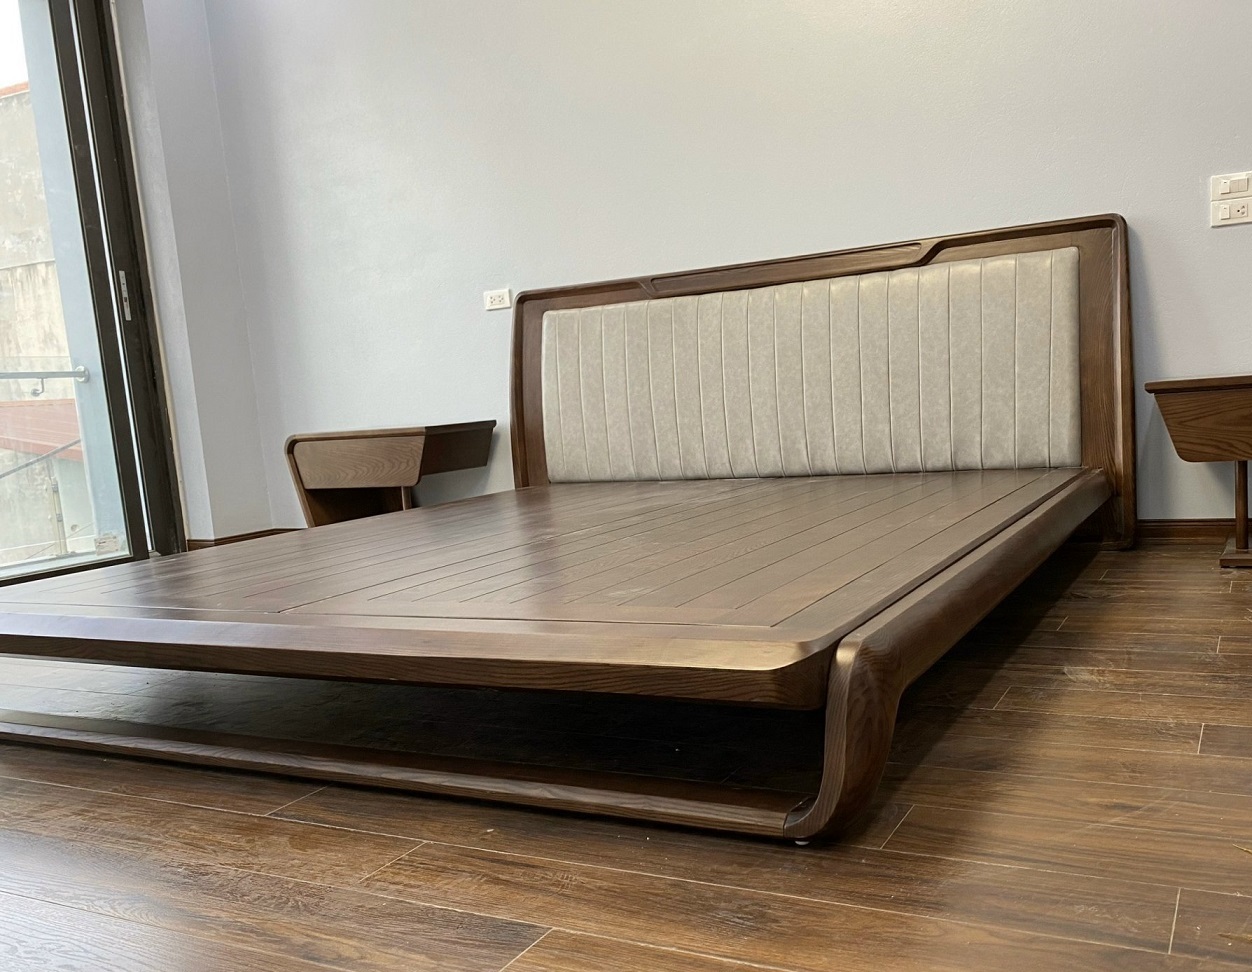 Khung giường bền bỉ, vững chắc nhờ chất gỗ cao cấp tự nhiên